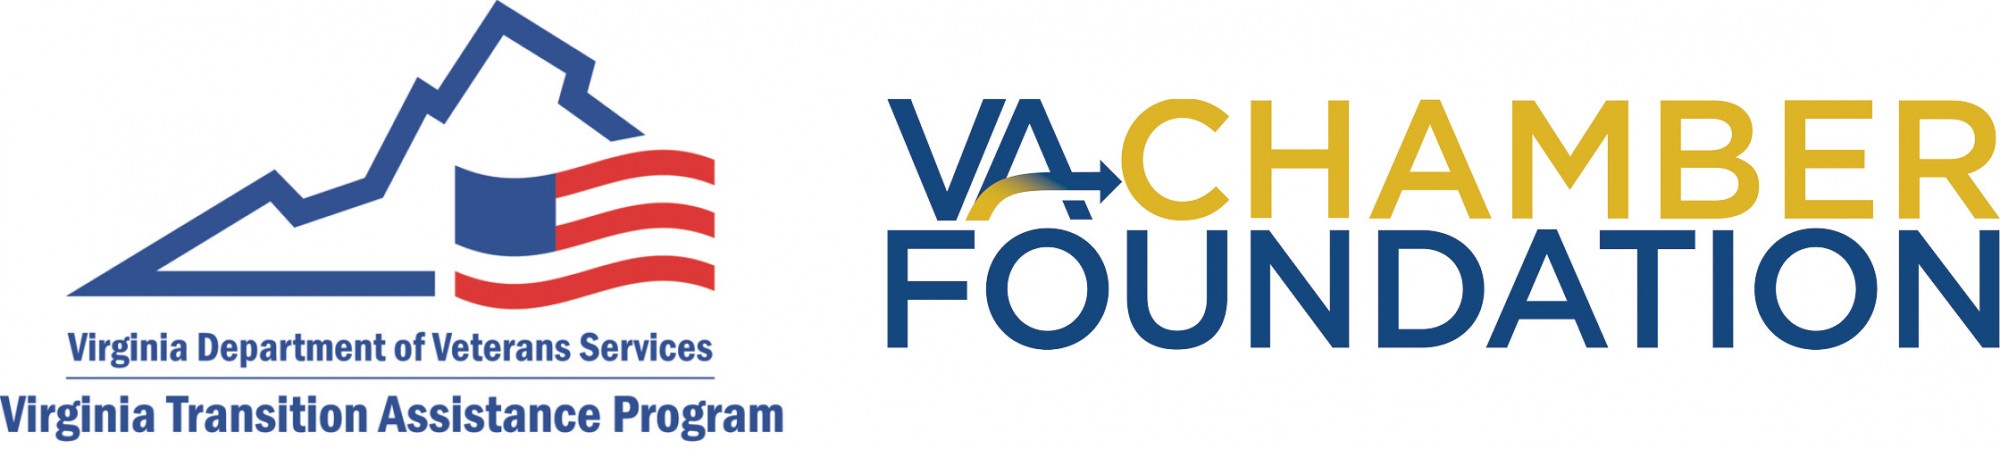 dvs and vcf logo